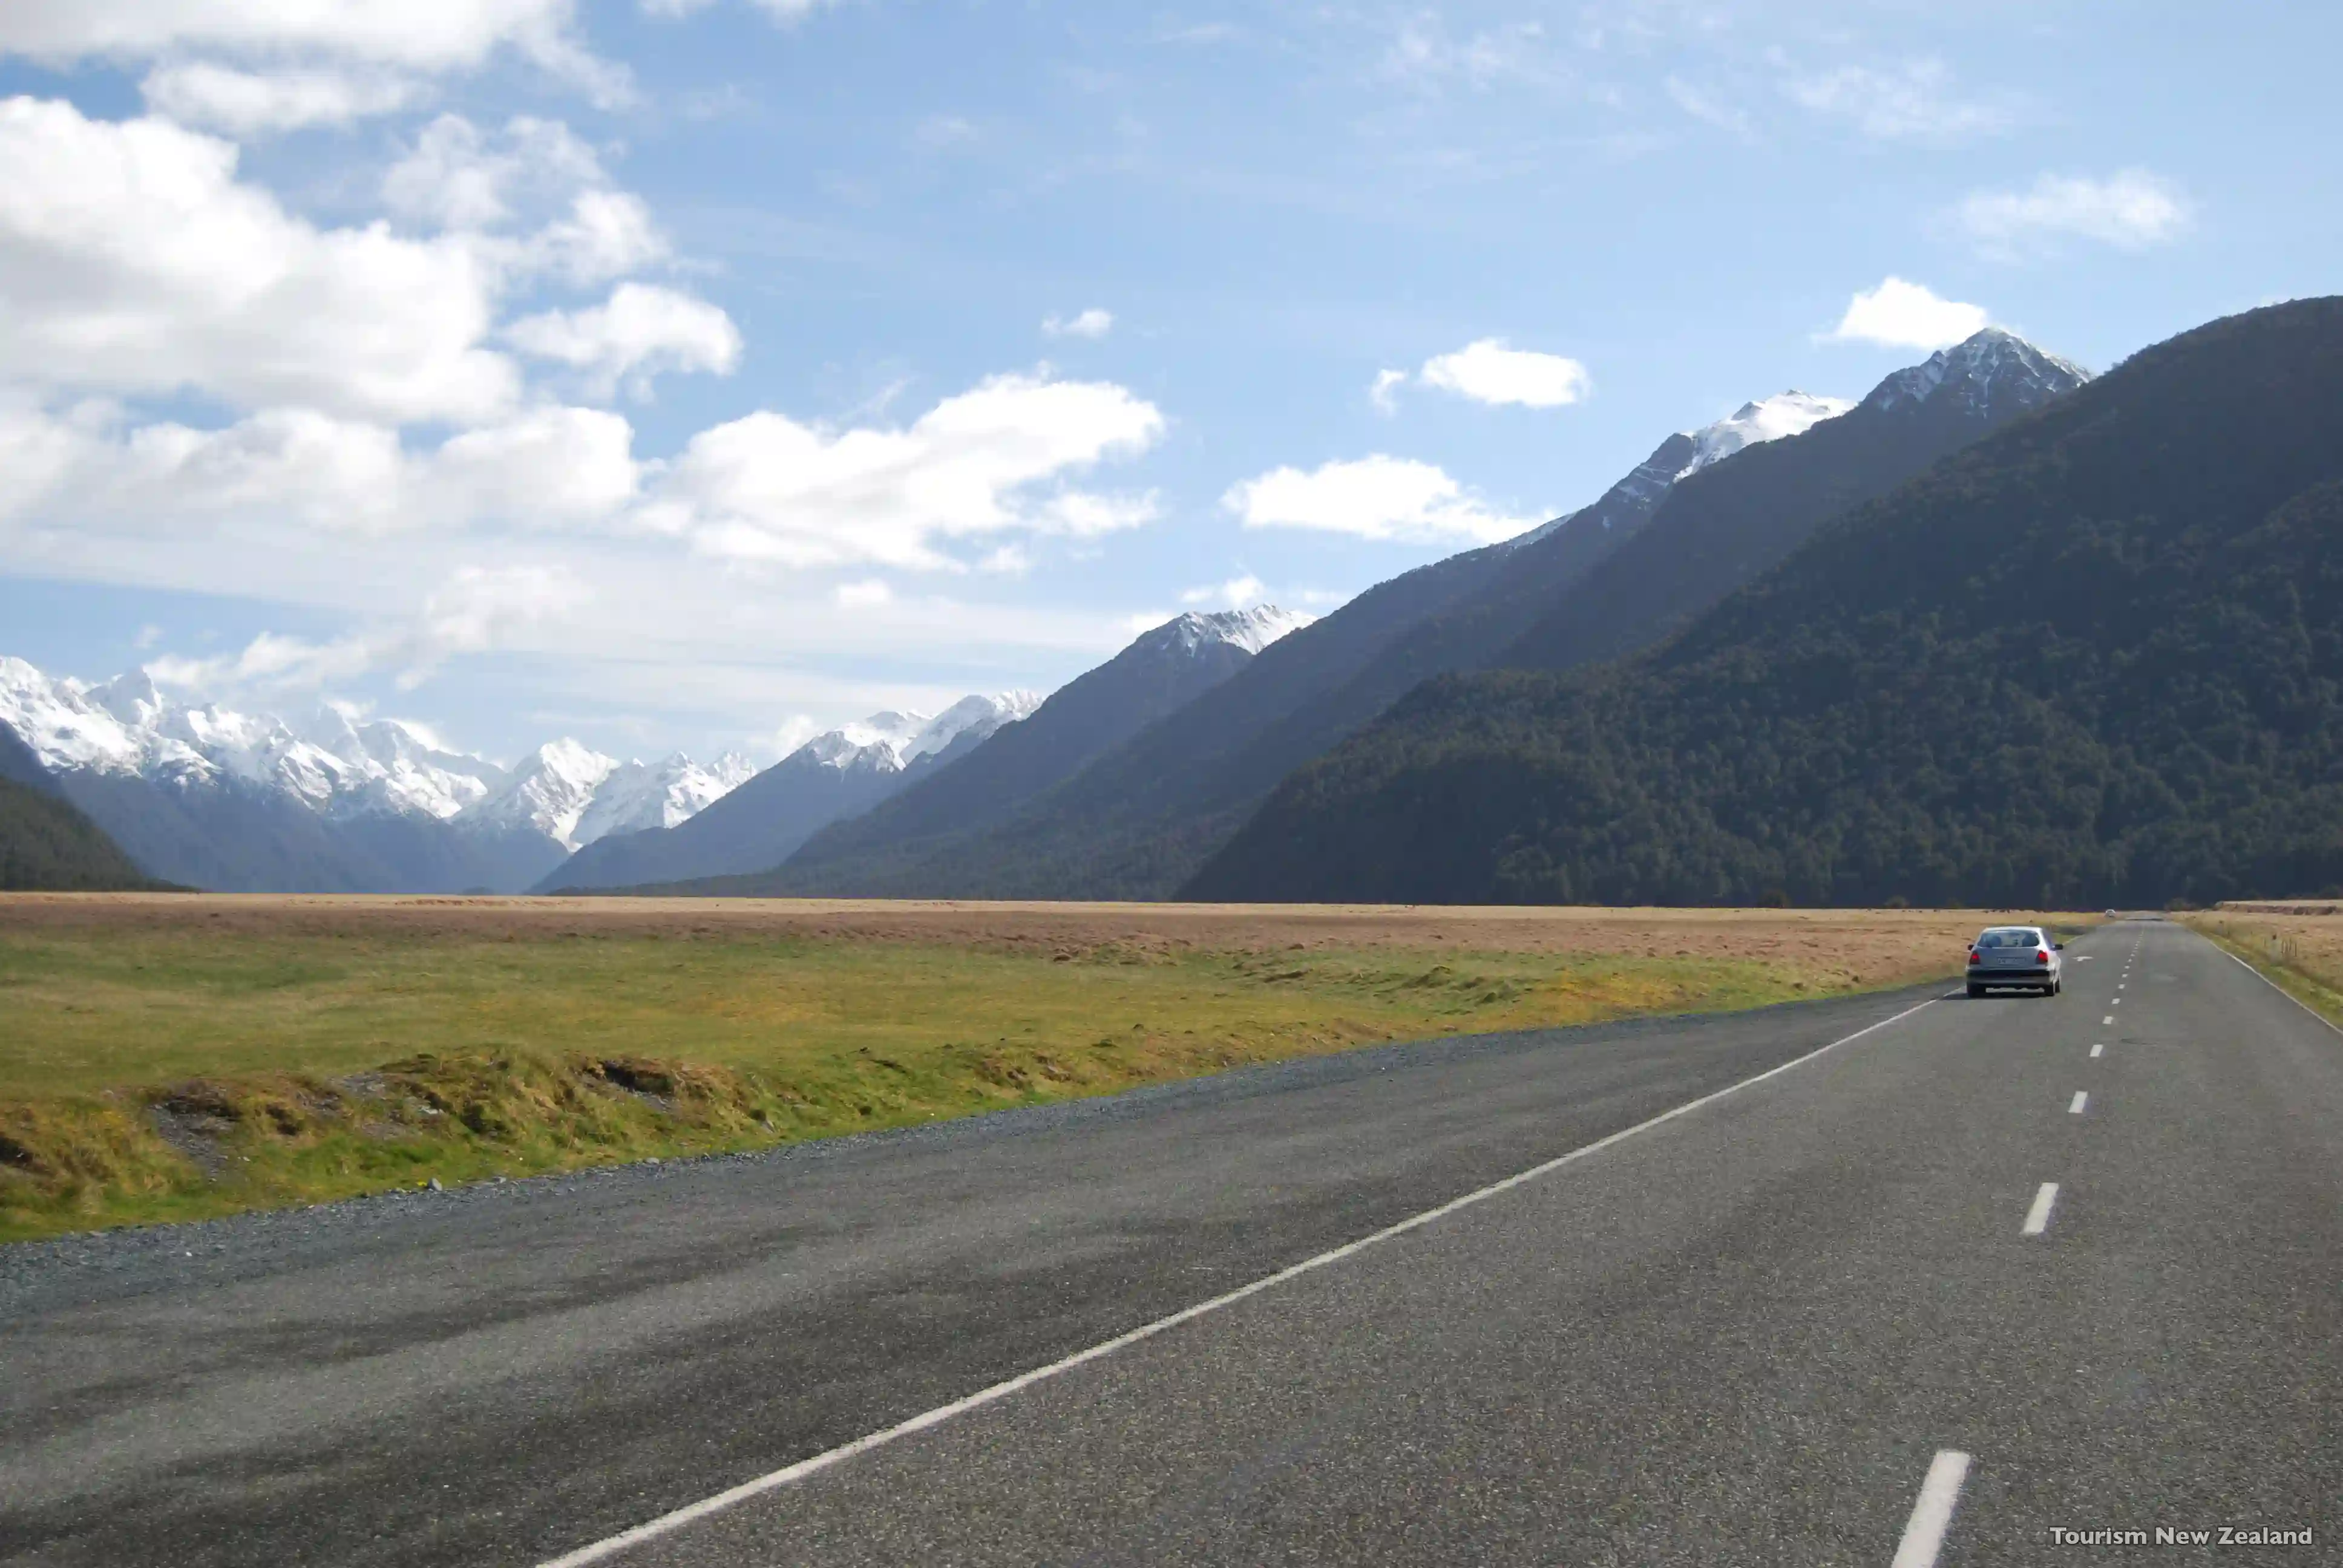 Vejen mod Fiordland National Park, New Zealand